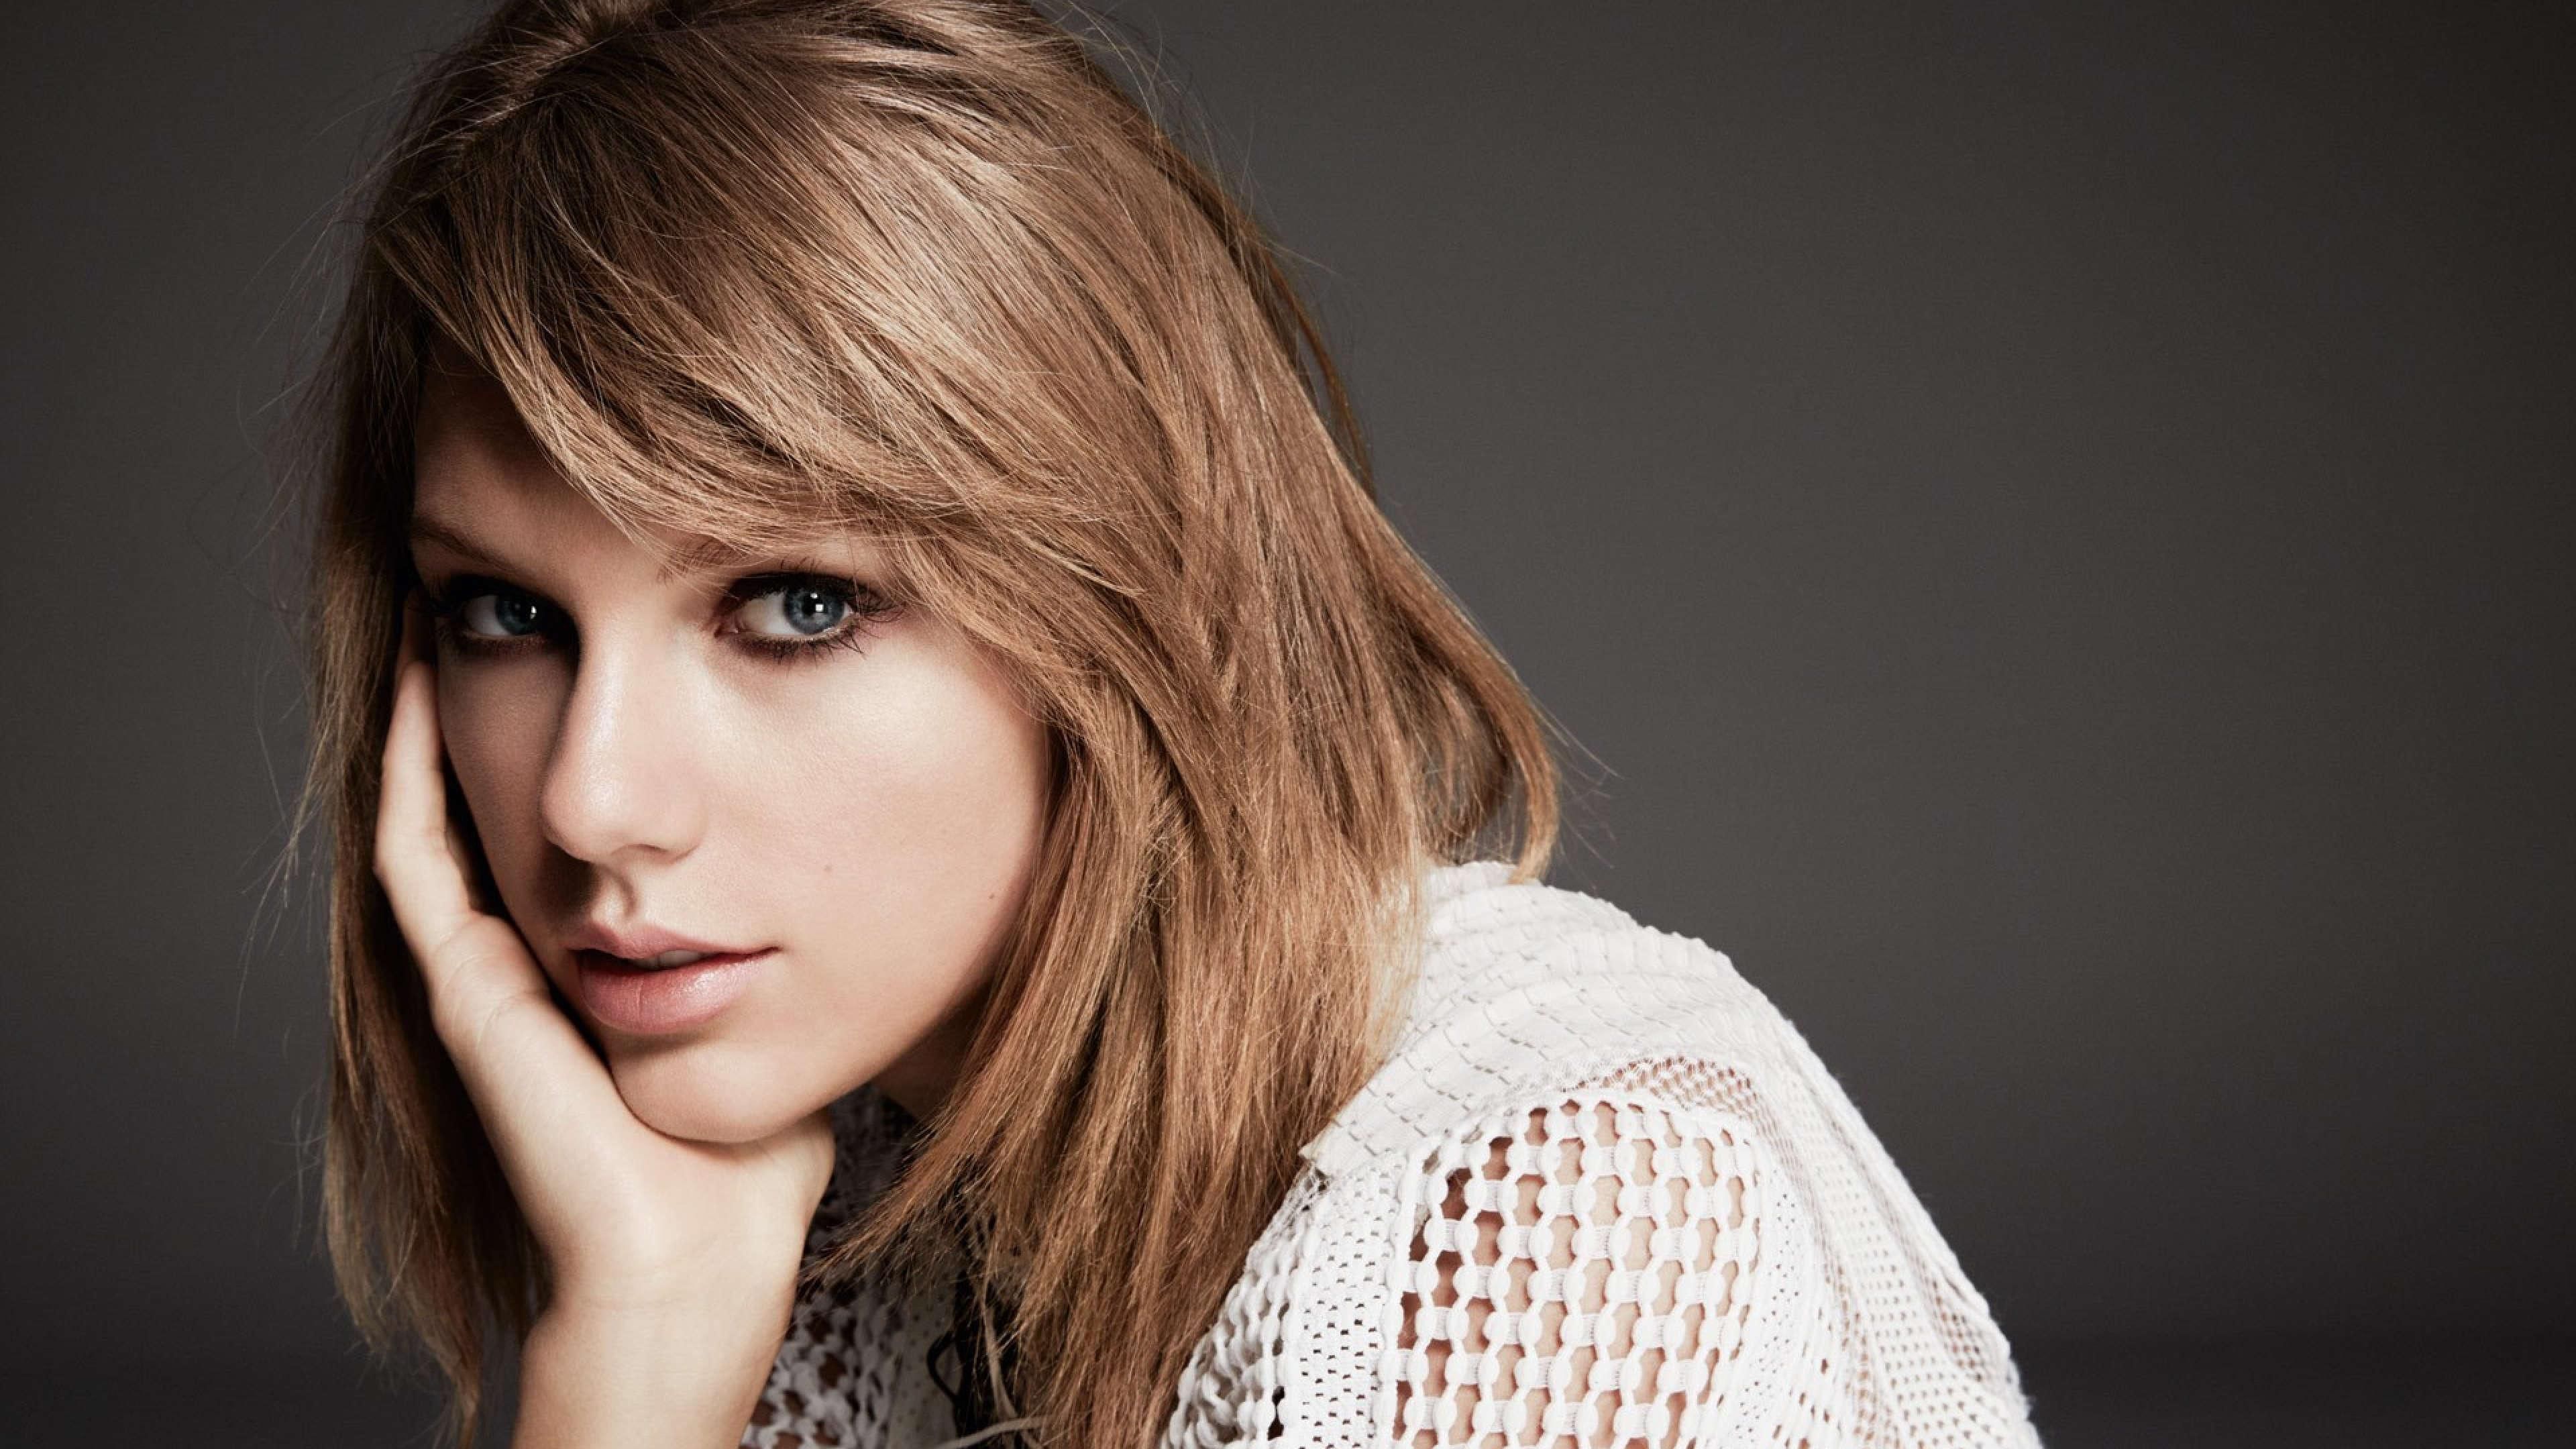 Taylor Swift 2019 4k, HD Celebrities, 4k Wallpaper, Image